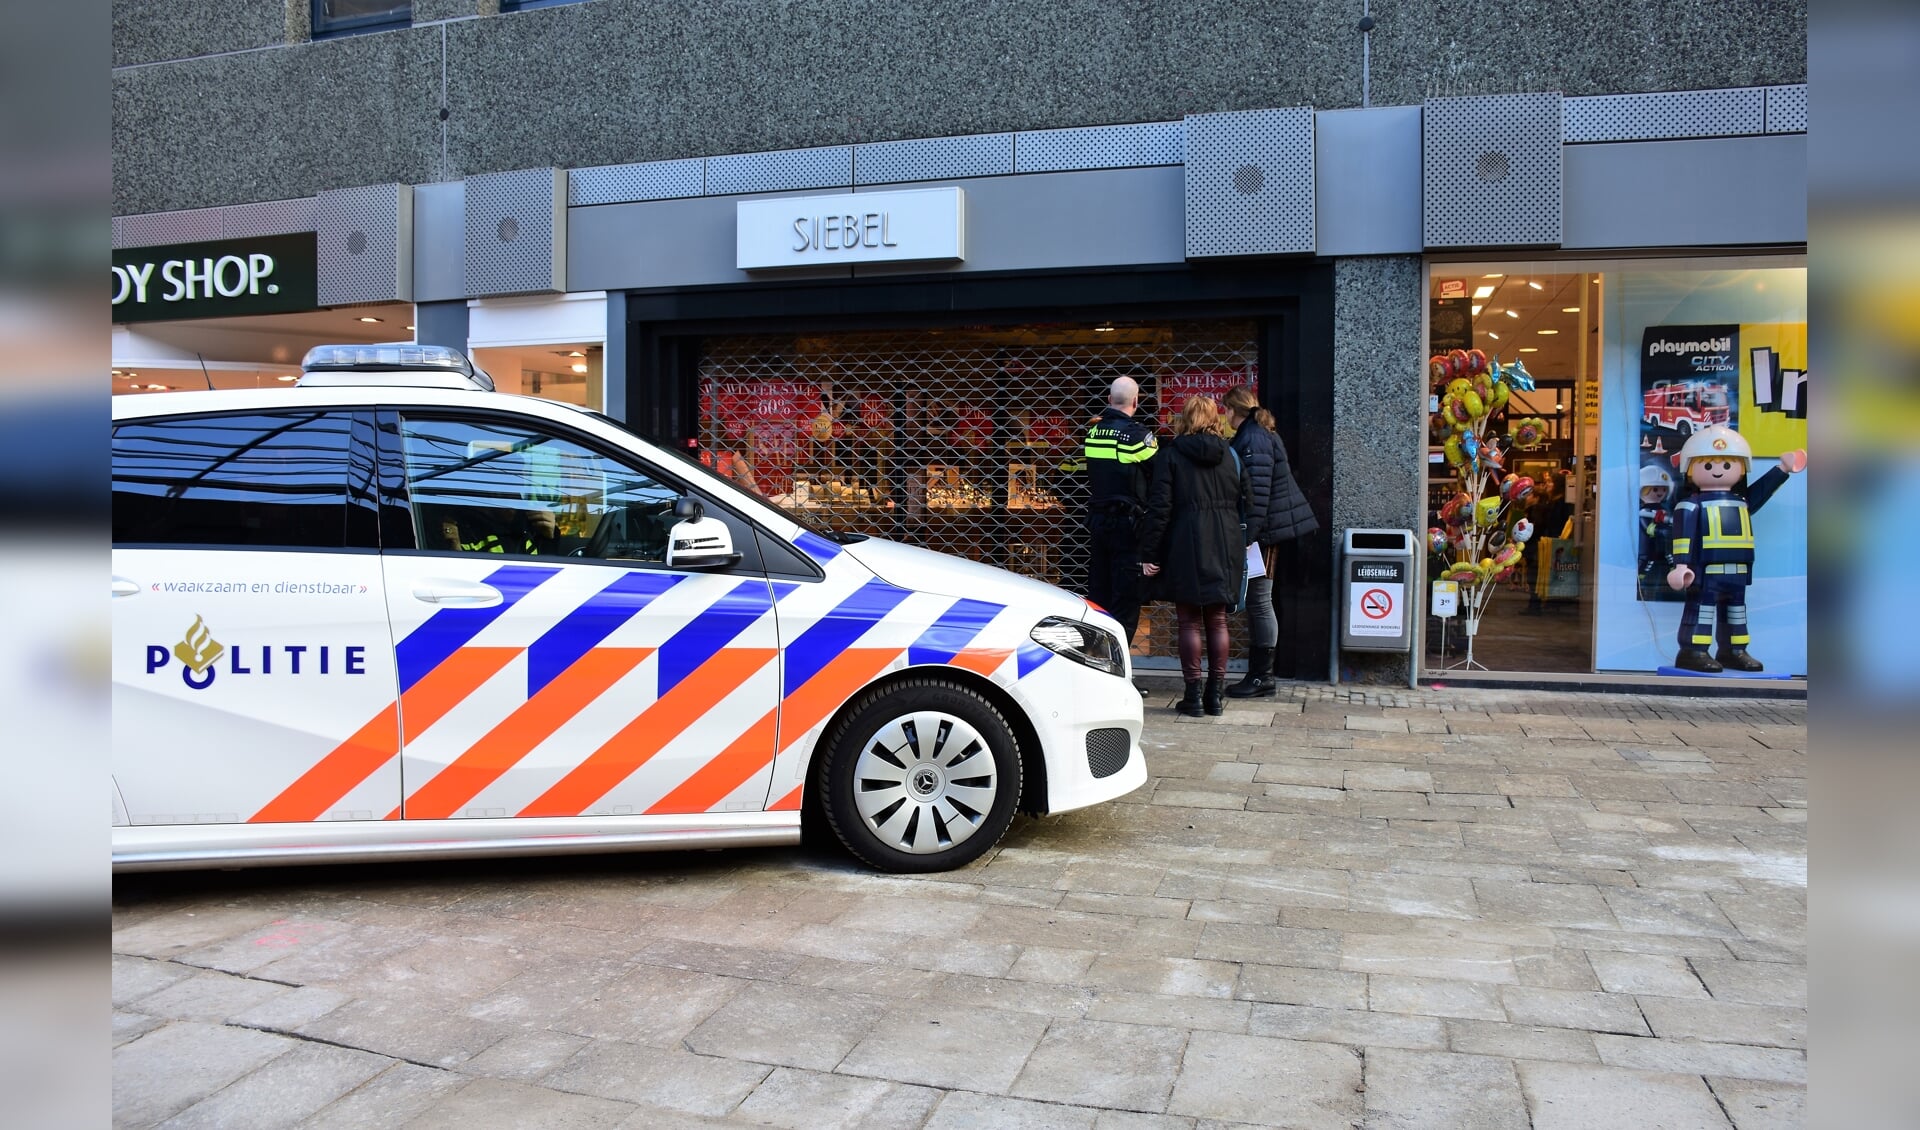 De politie verricht onderzoek bij de overvallen juwelier in winkelcentrum Leidsenhage (foto: Sebastiaan Barel).